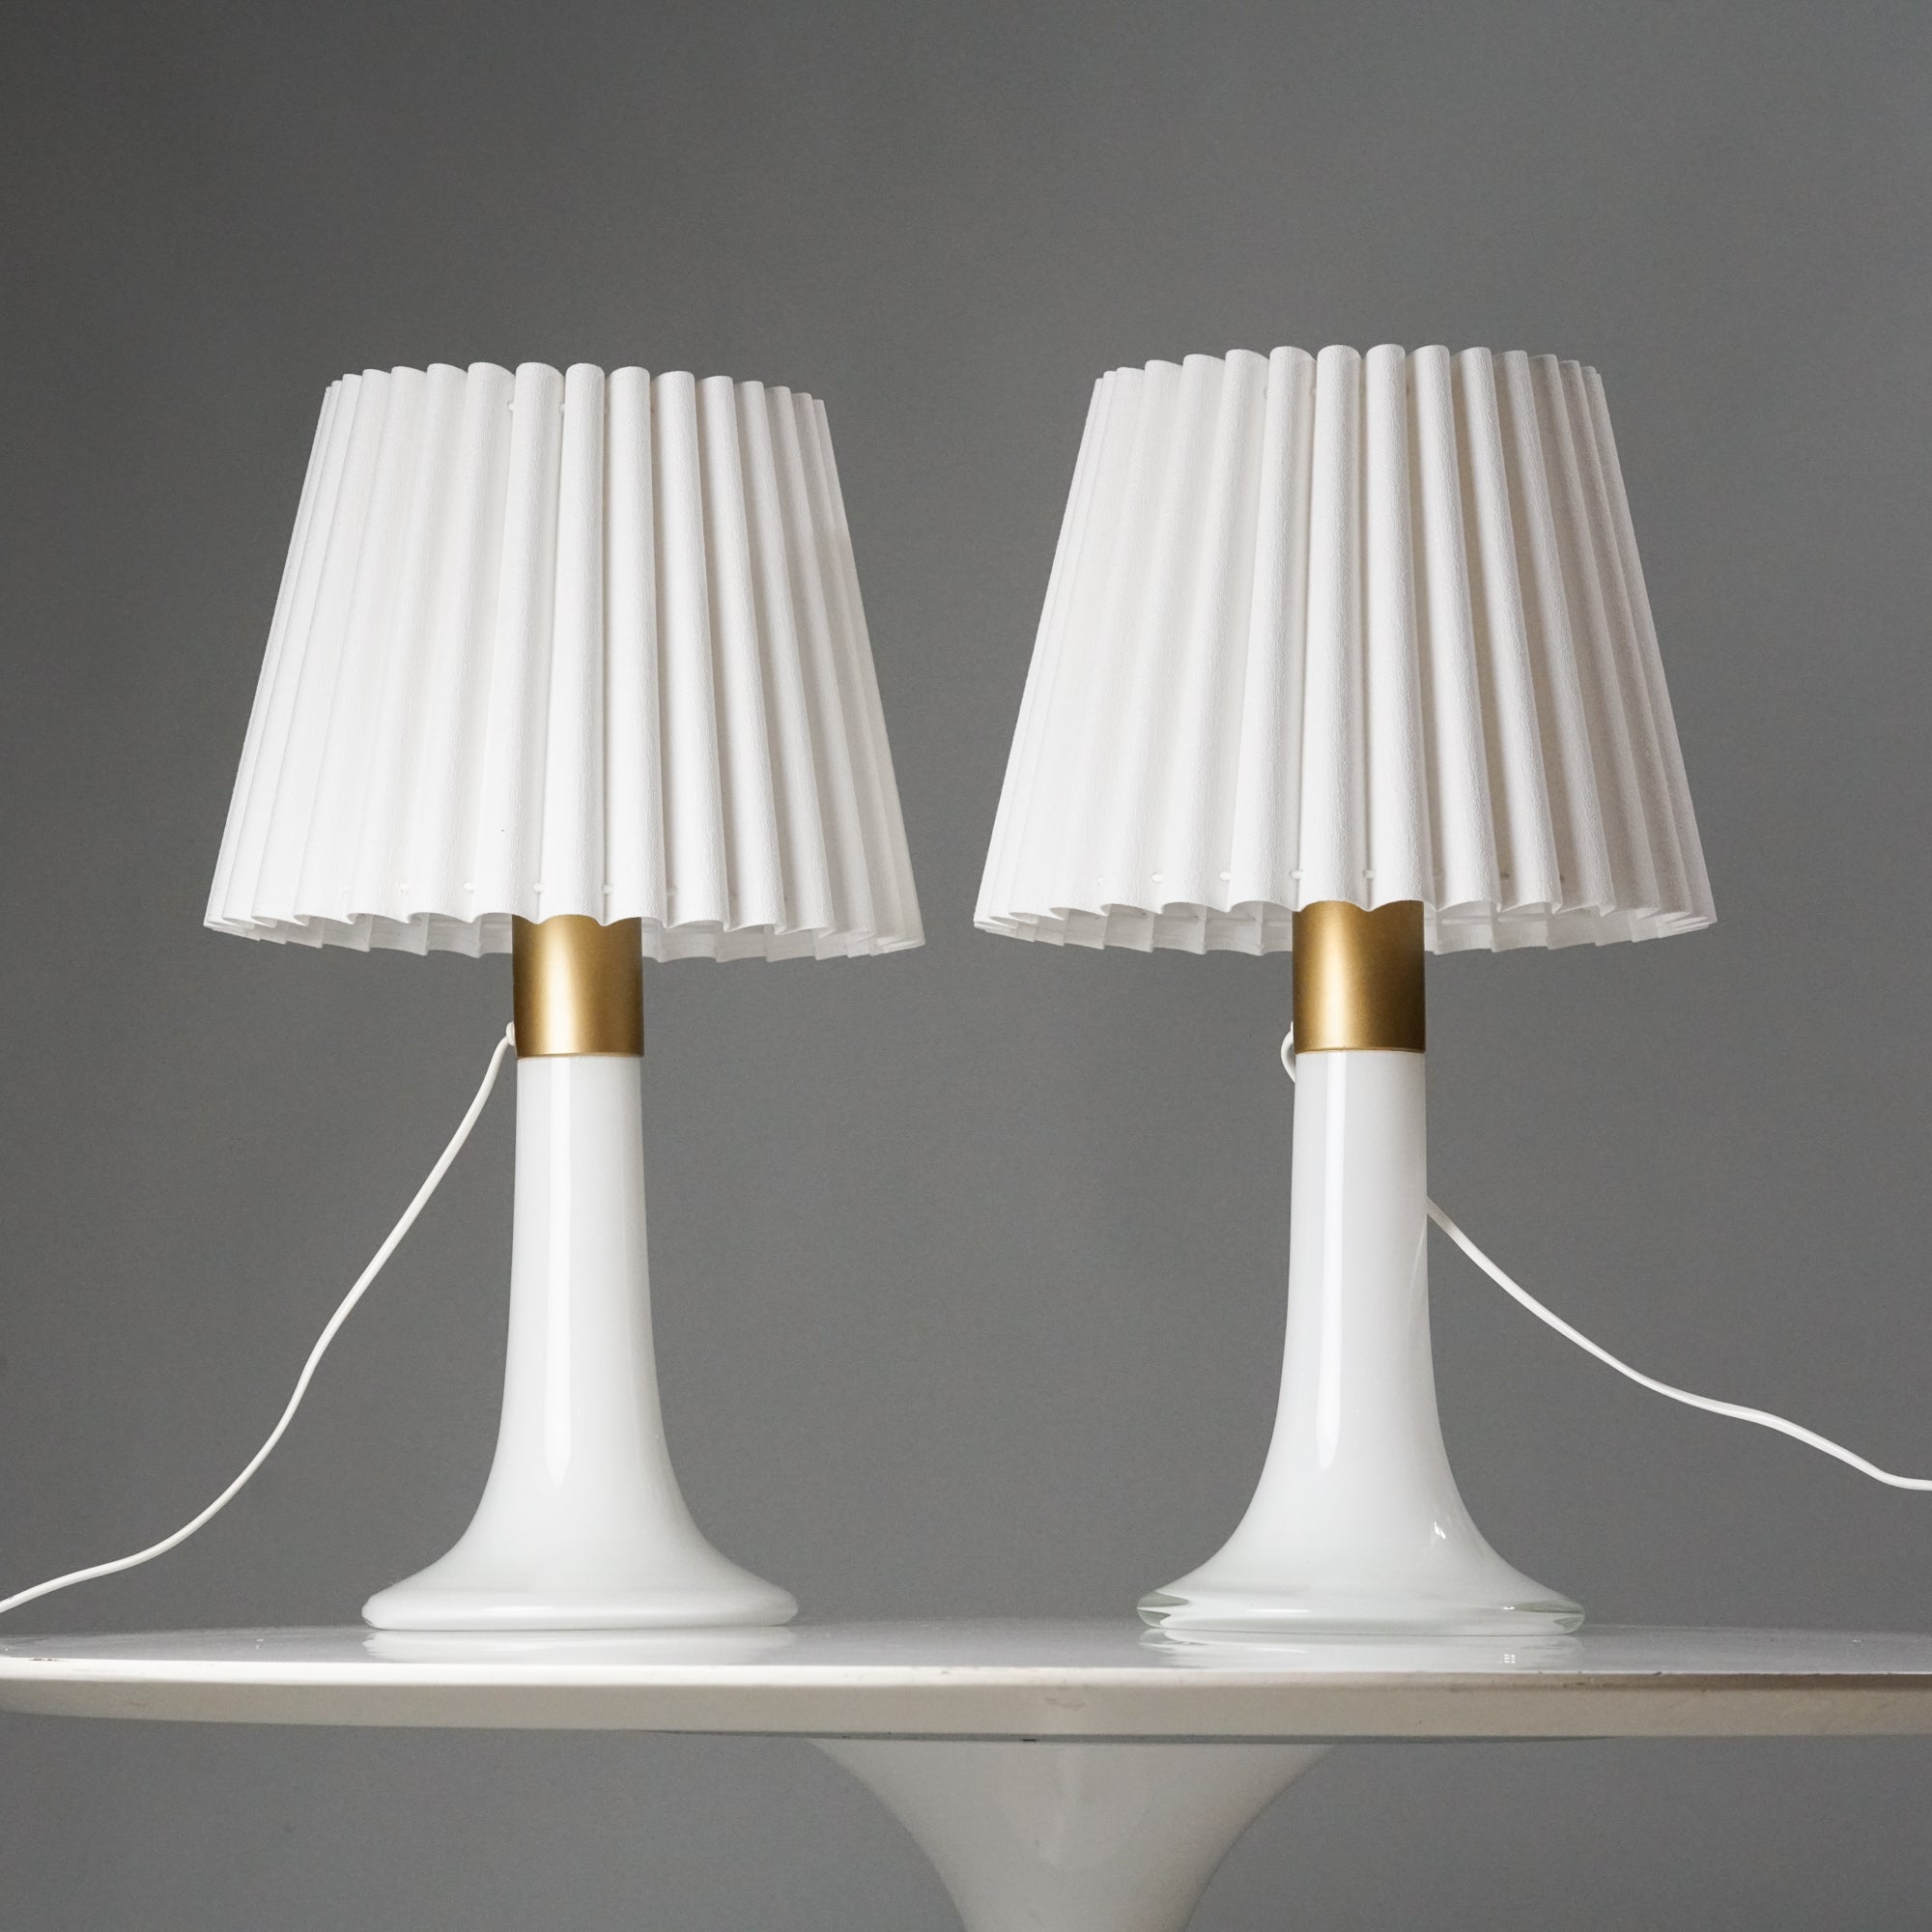 Kaksi samanlaista lamppua, joissa valkoiset laskostetut varjostimet ja valkoisesta lasista tehdyt jalat. Lamppujen jaloissa on maalattu koristelu kullan värillä.